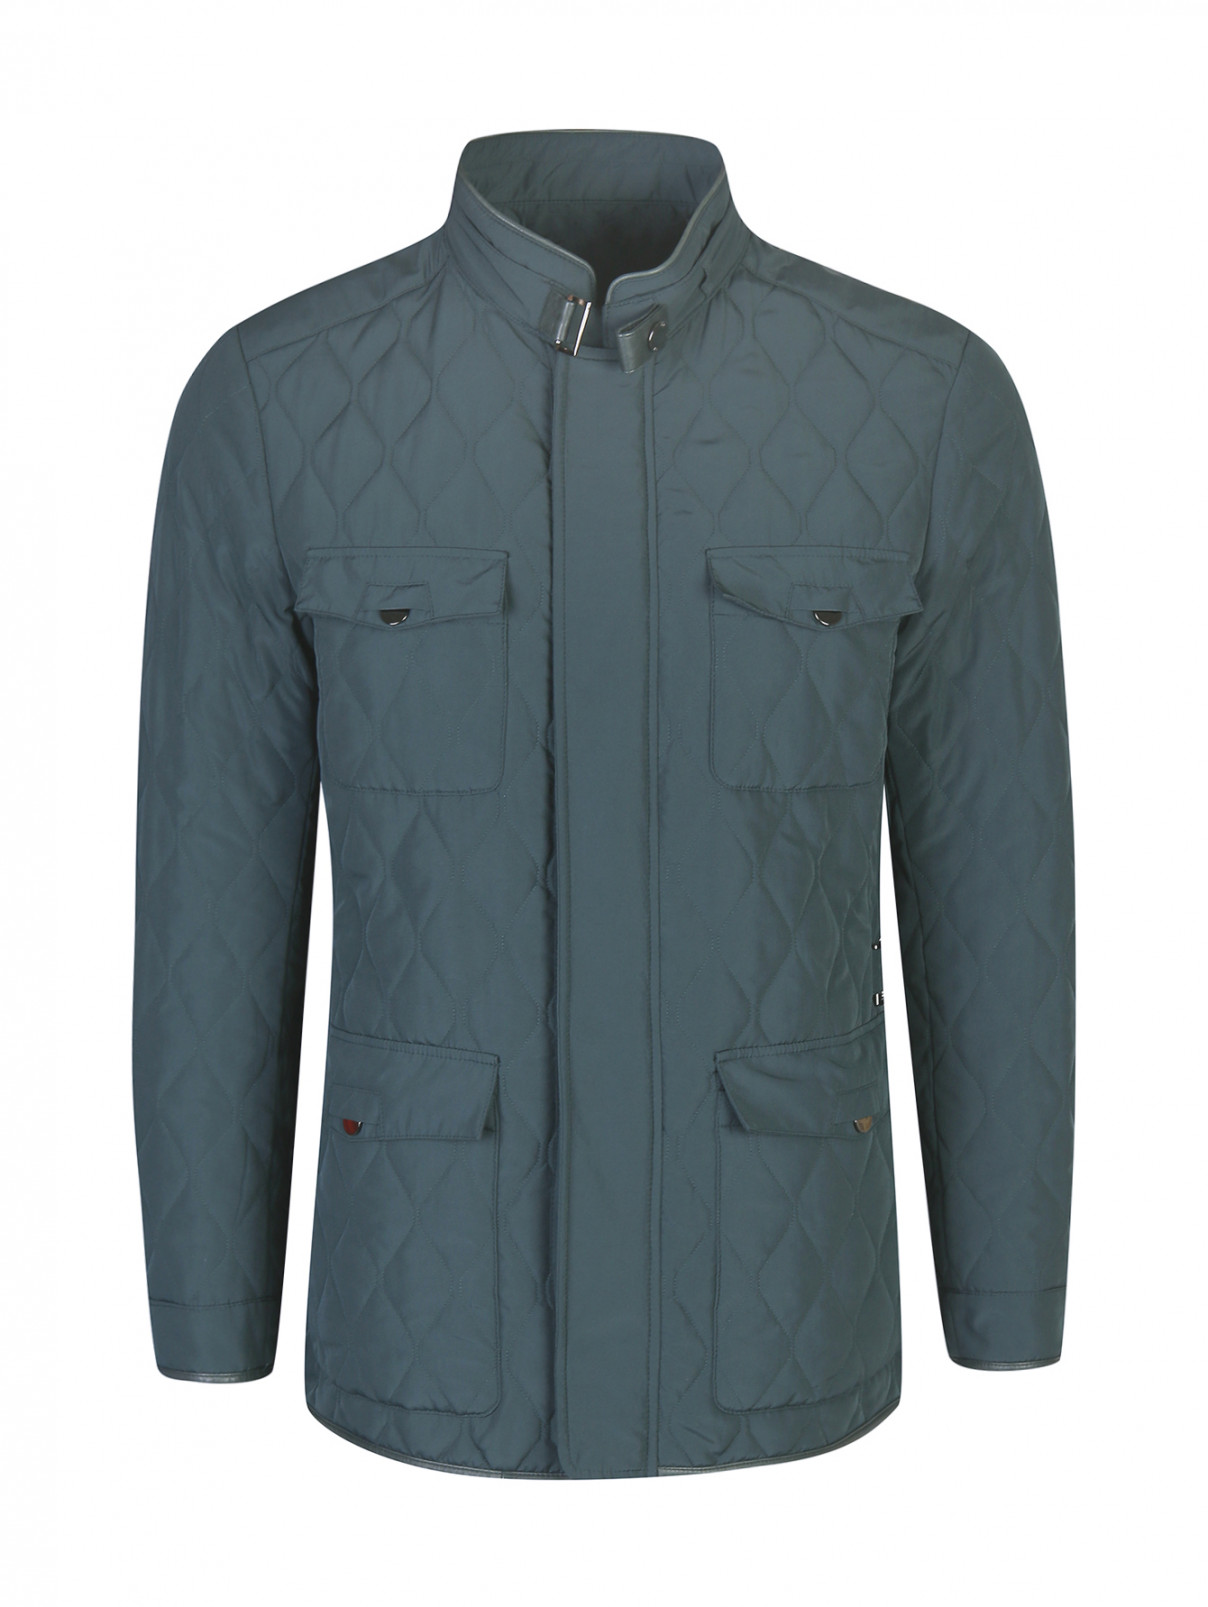 Куртка стеганая с нагрудным карманом Pal Zileri  –  Общий вид  – Цвет:  Зеленый